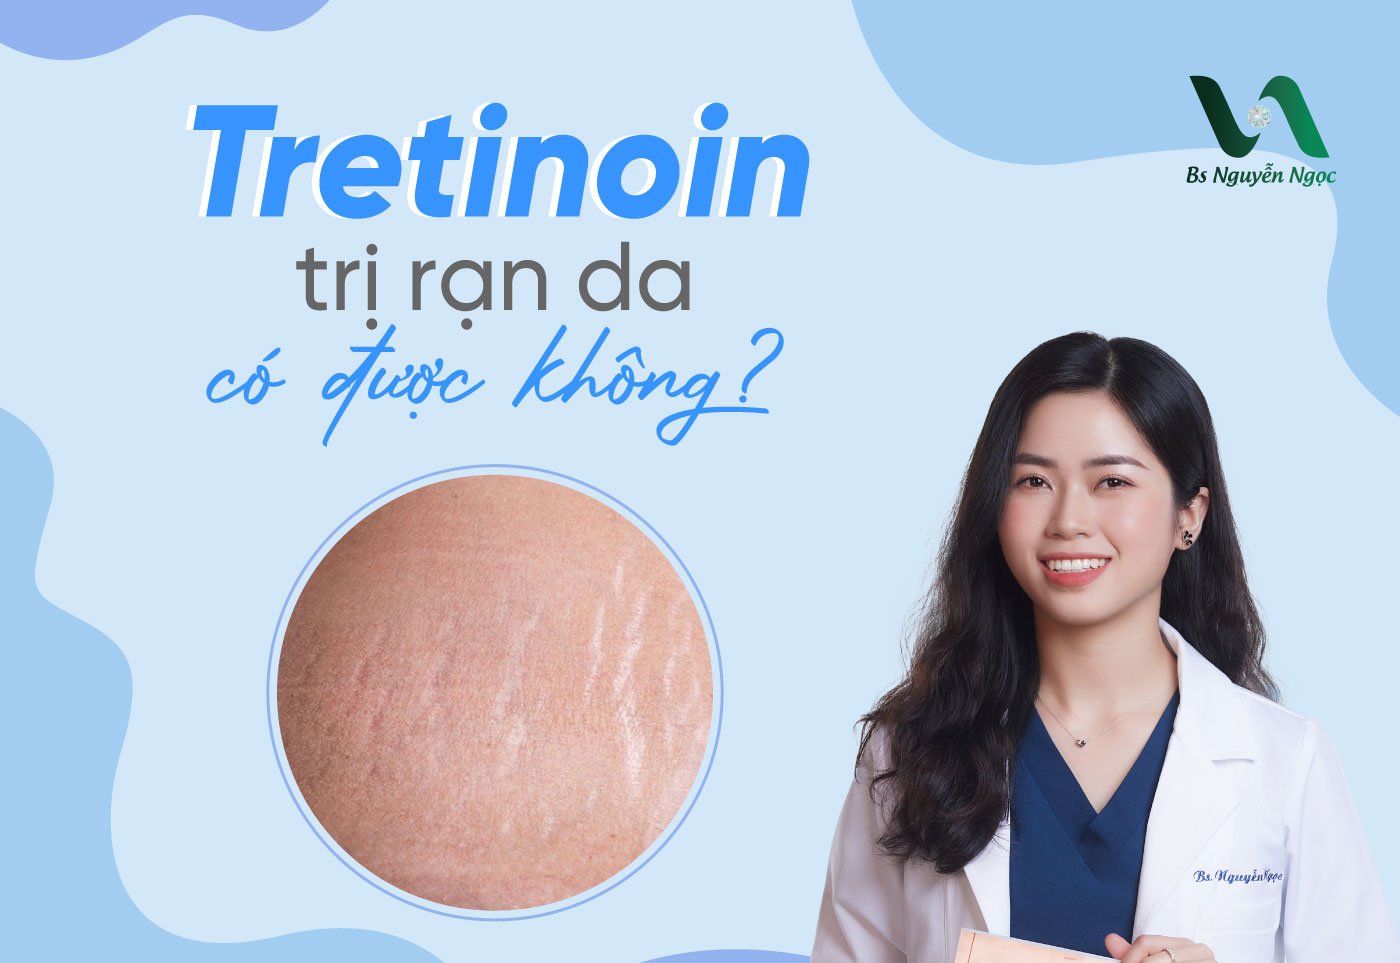 Tretinoin trị rạn da có được không?